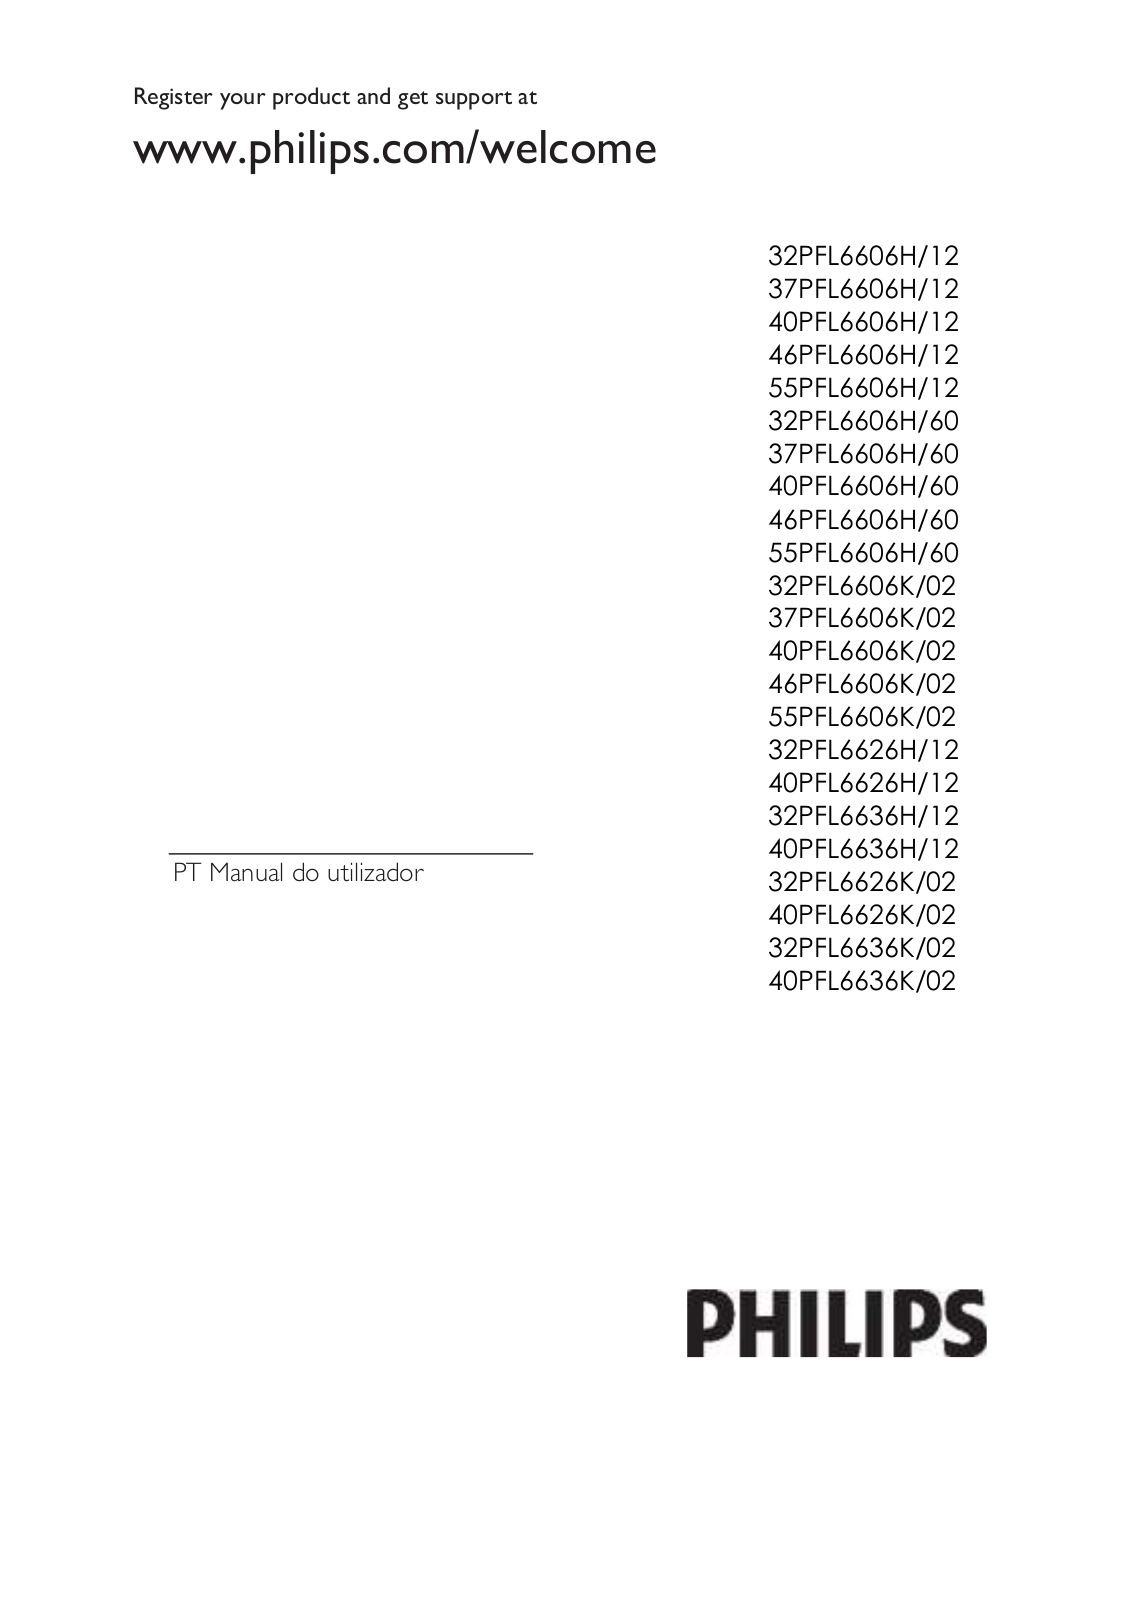 Philips 32PFL6606H/12, 37PFL6606H/12, 40PFL6606H/12, 46PFL6606H/12, 55PFL6606H/12 User Manual